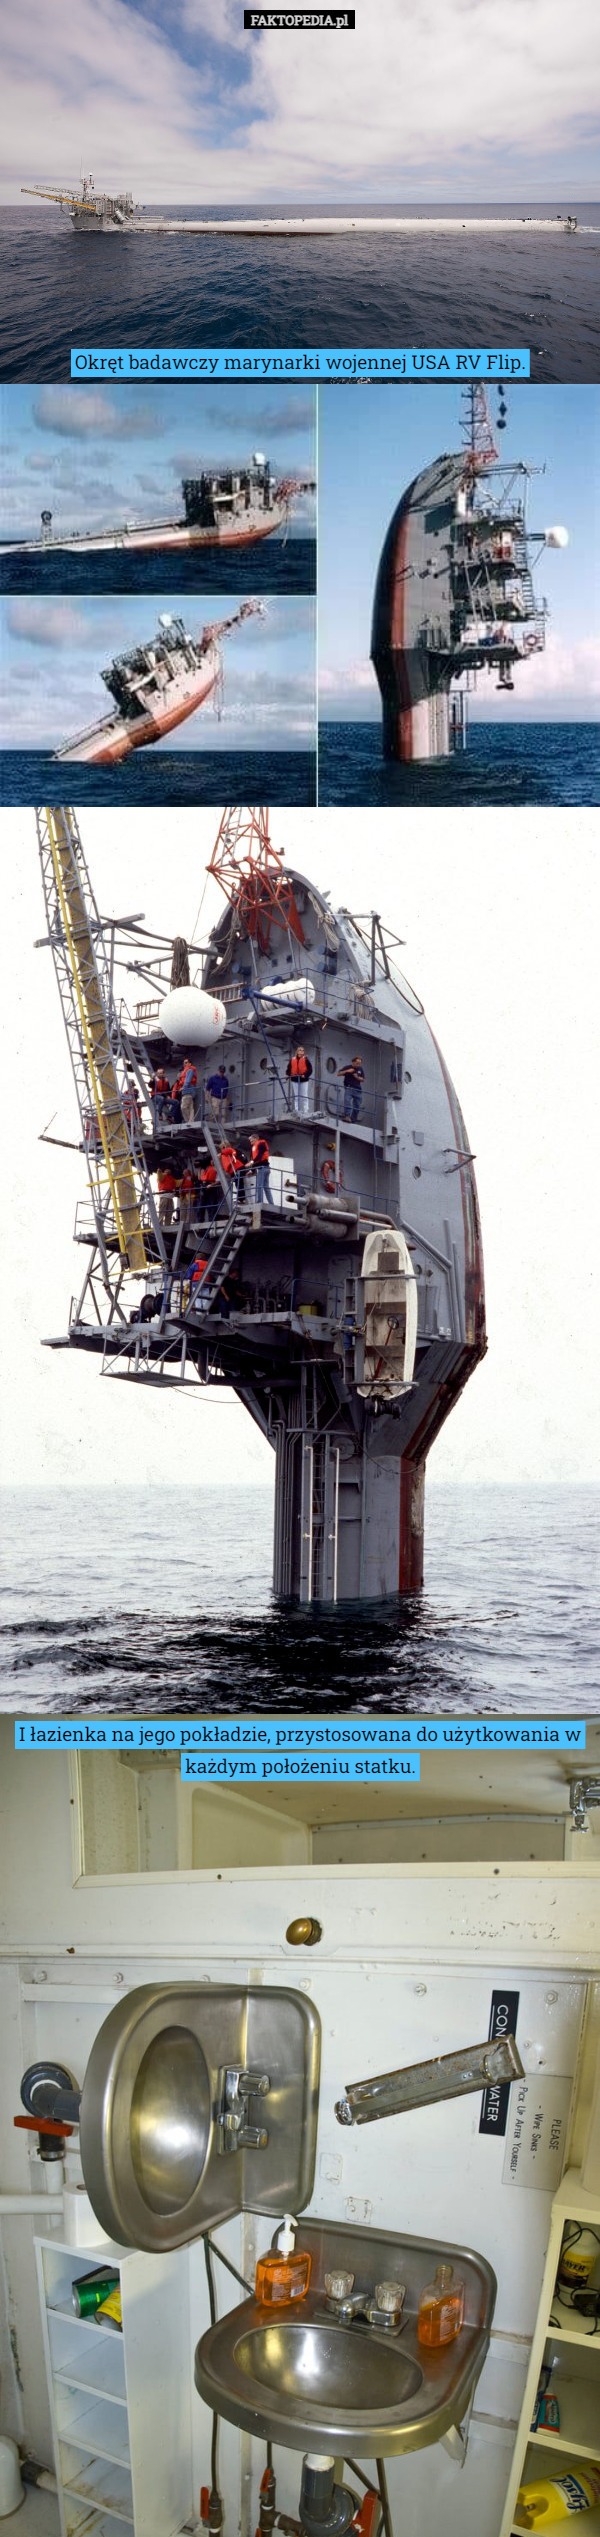 Okręt badawczy marynarki wojennej USA RV Flip. I łazienka na jego pokładzie, przystosowana do użytkowania w każdym położeniu statku. 